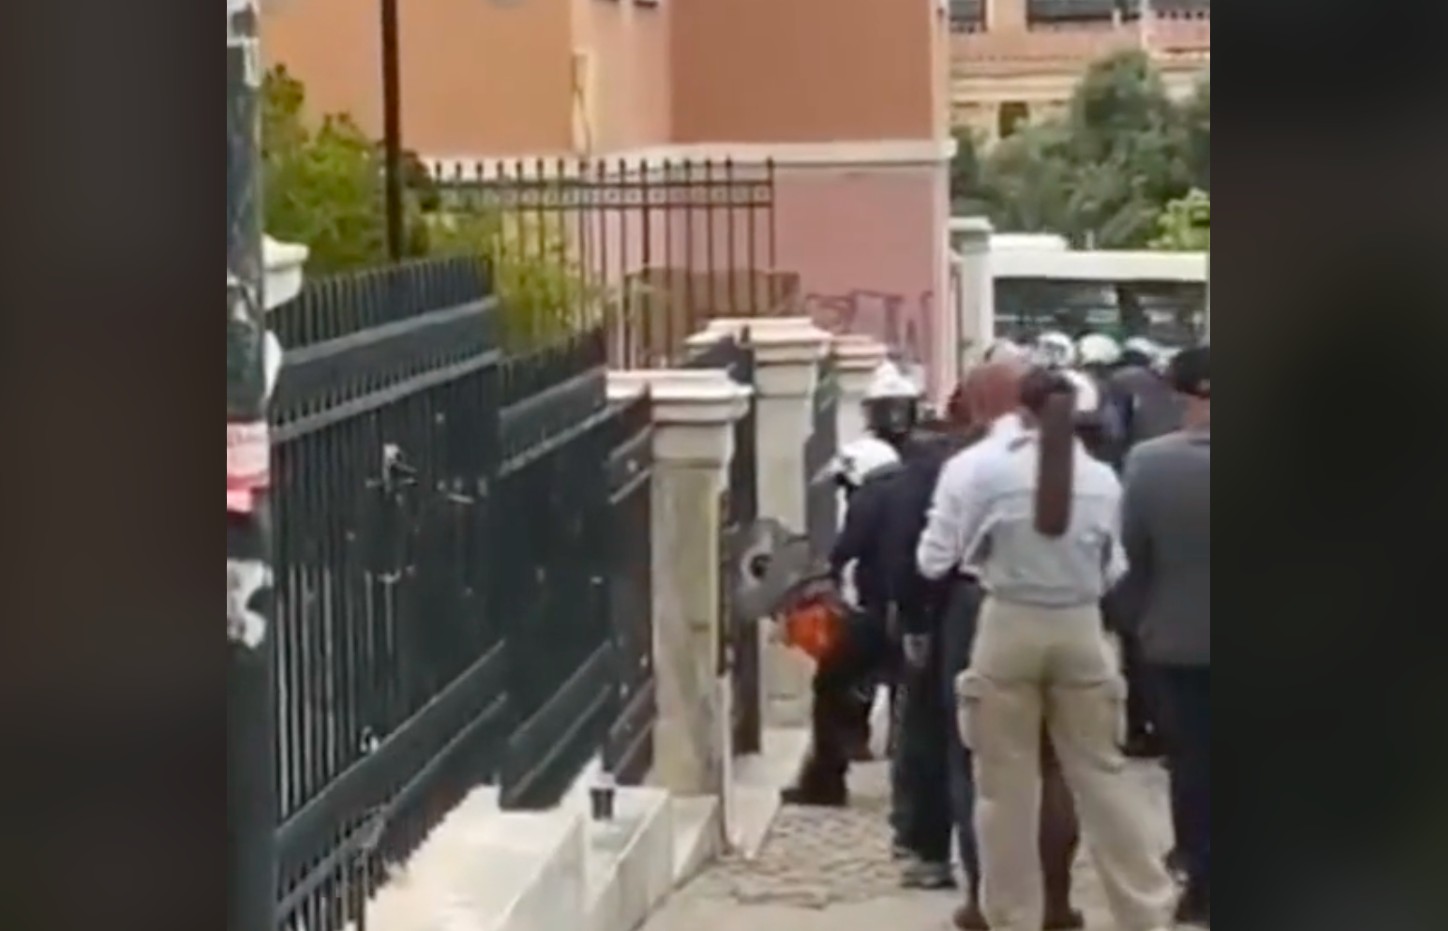  Η αστυνομία με τροχό εισβάλει στη Νομική Σχολή Αθηνών για τον τερματισμό της κατάληψης / ΒΙΝΤΕΟ-ΦΩΤΟ